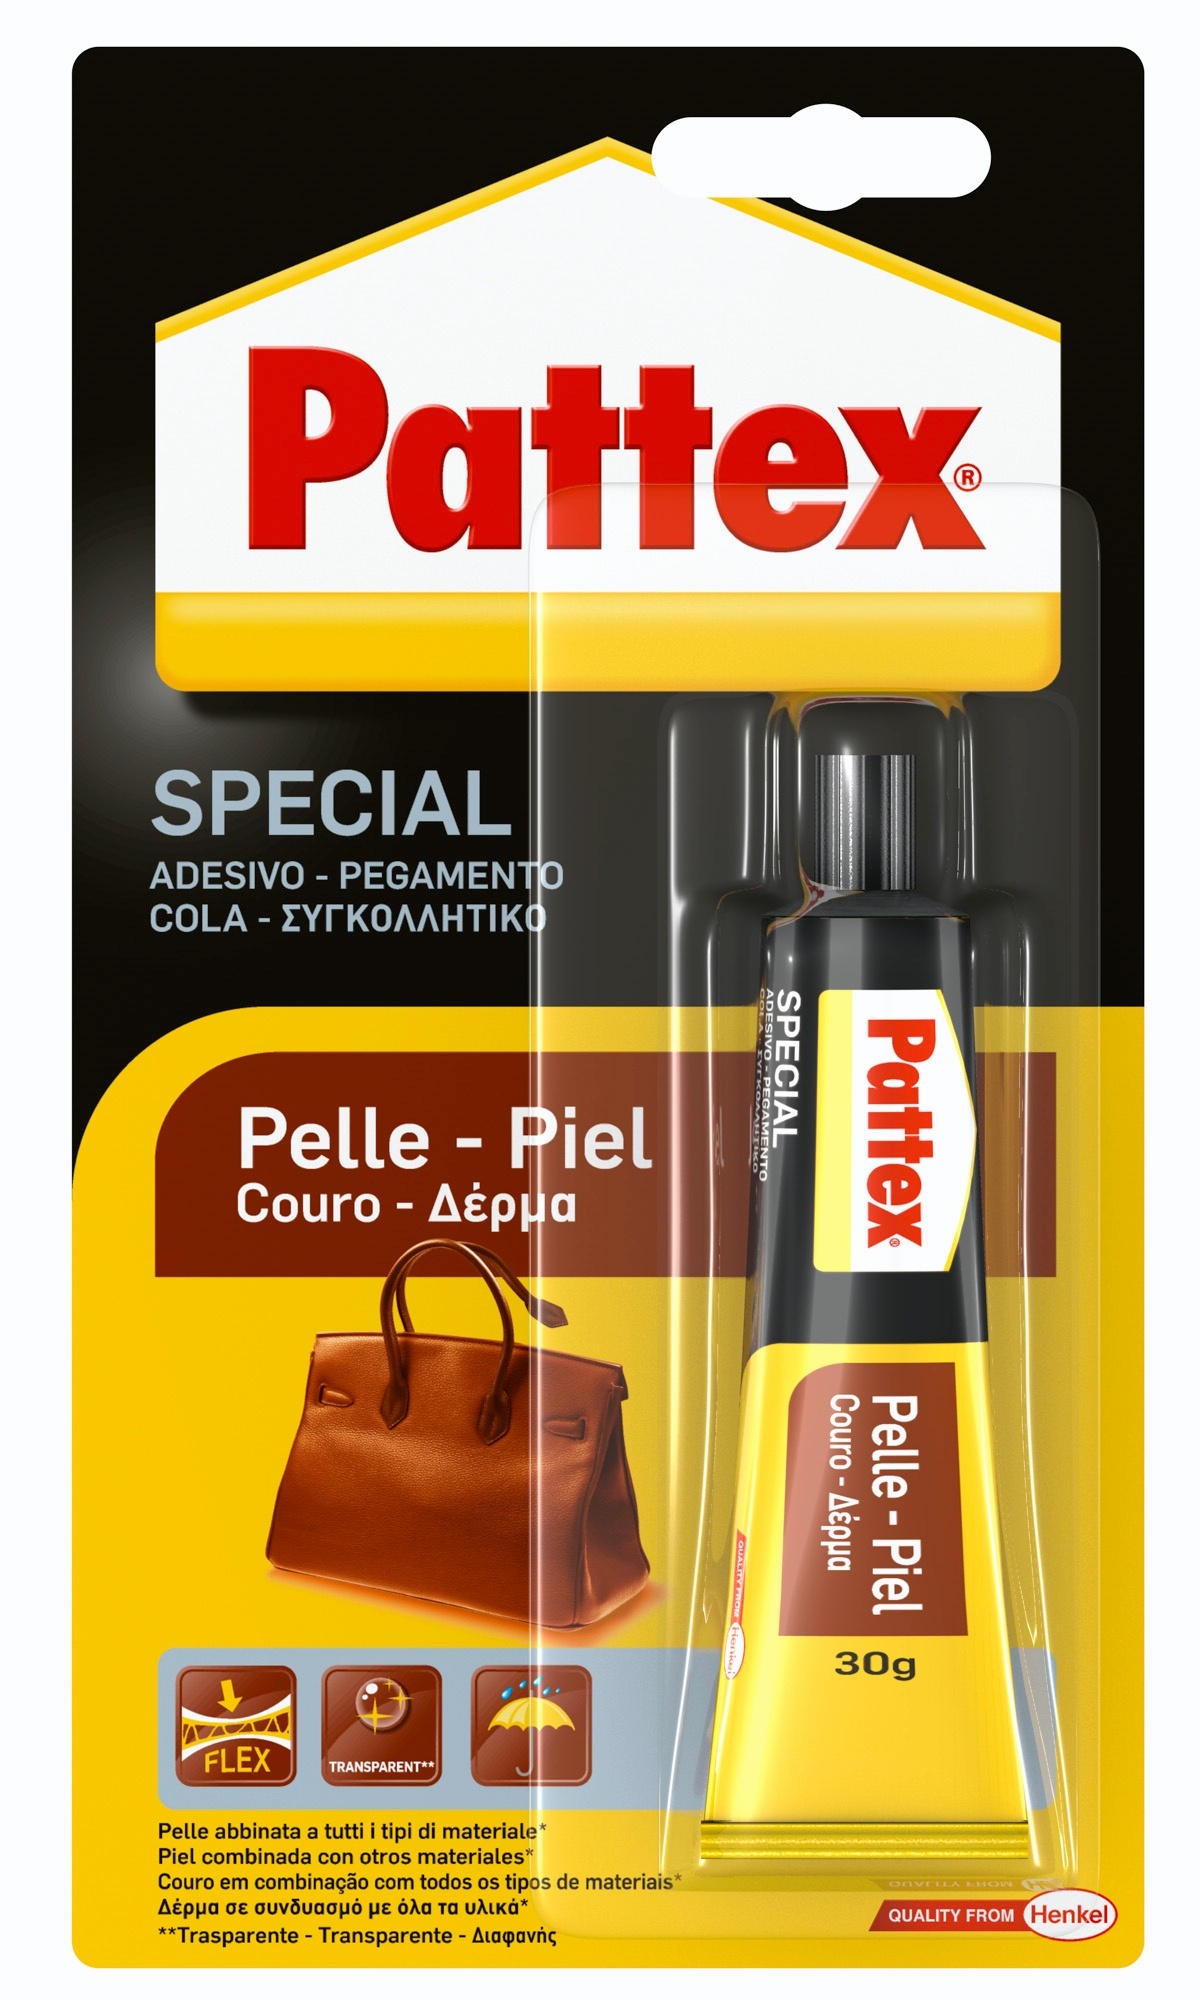 PATTEX Pelle 30g - Pedone S.r.l. Dept Store